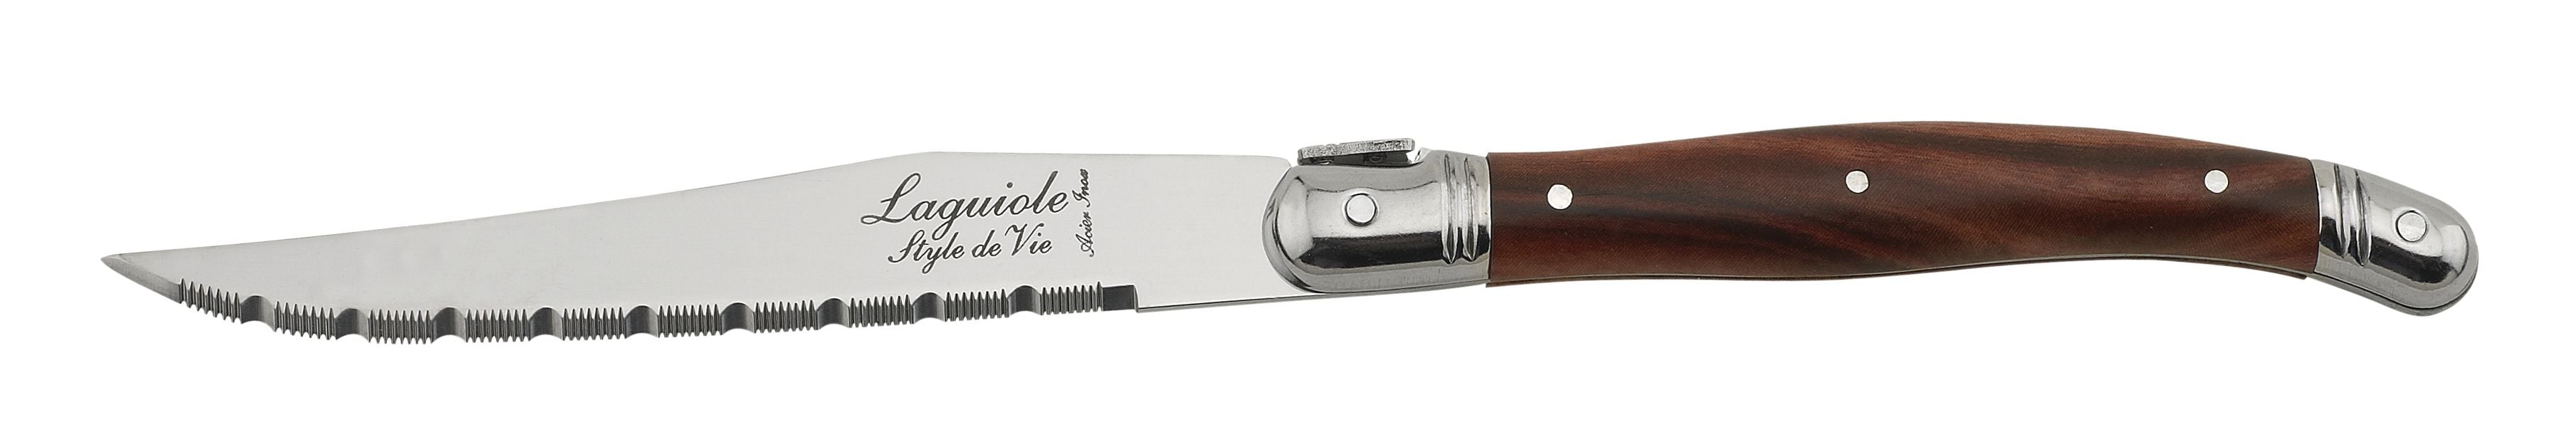 Style De Vie Authentique Laguiole Premium Line Steak Knives 6 Ensemble de pièces, bois foncé